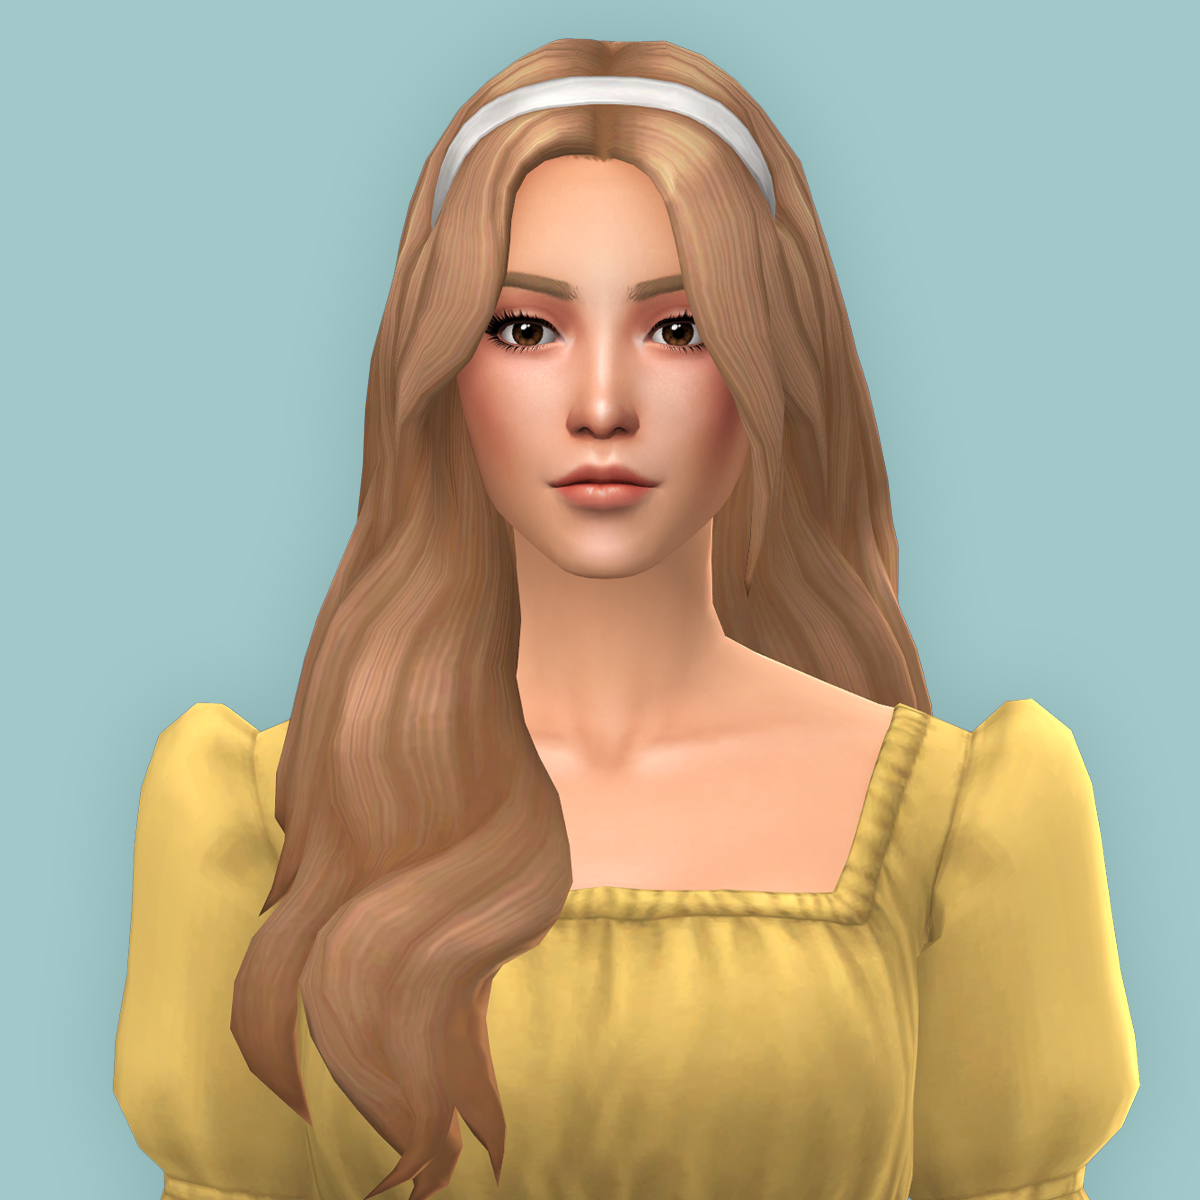 QICC - Nisma Hair - The Sims 4 Create a Sim - CurseForge